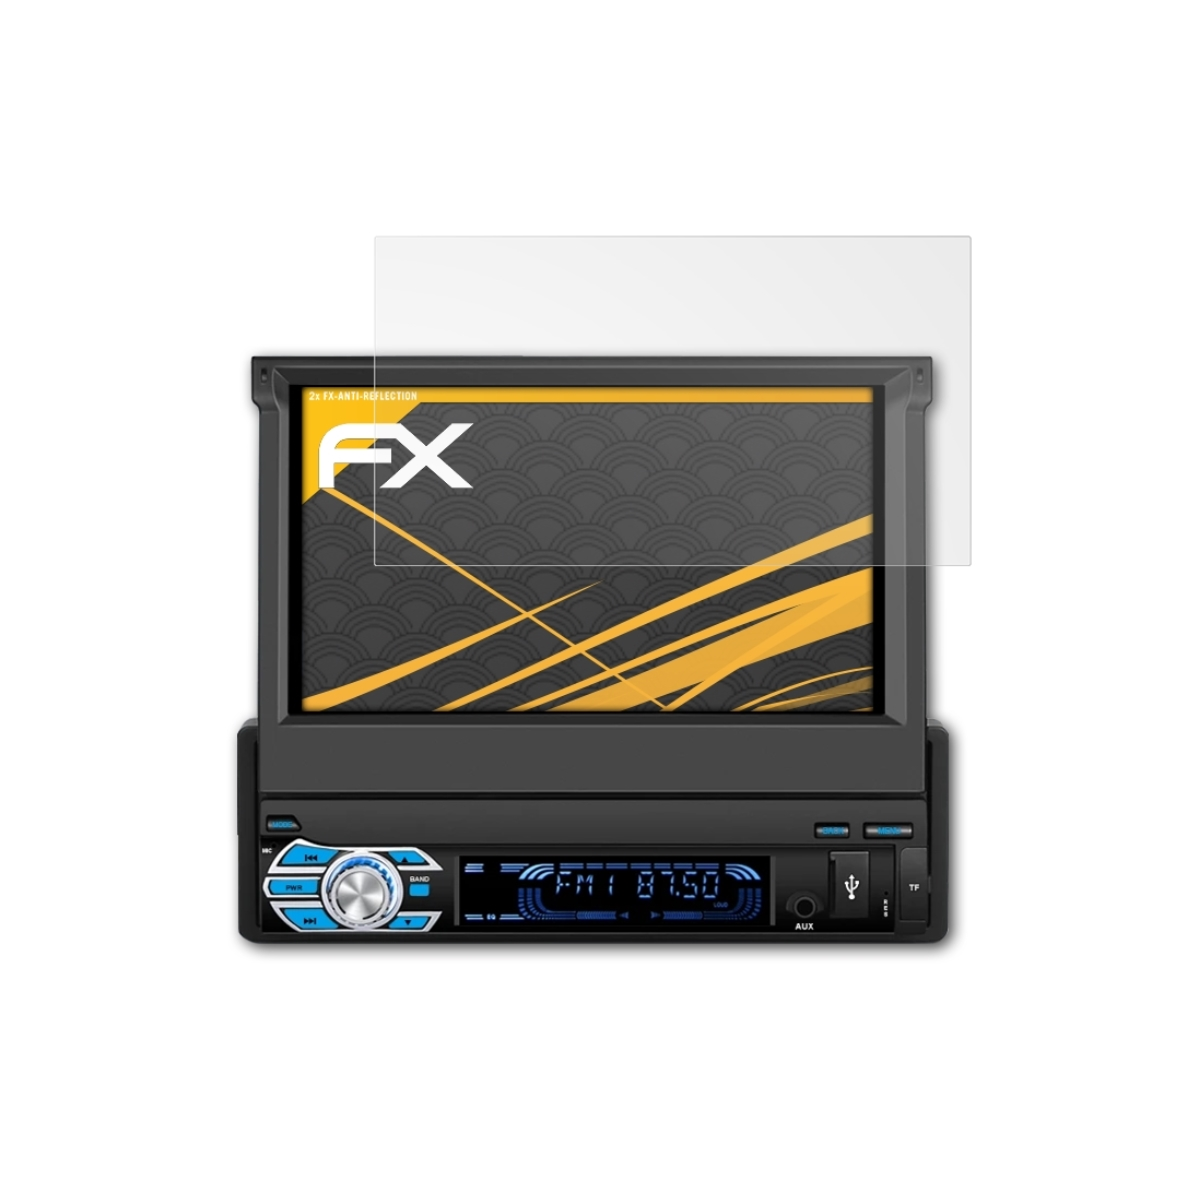 ATFOLIX 2x FX-Antireflex Displayschutz(für AA0553B Pumpkin Inch)) (7